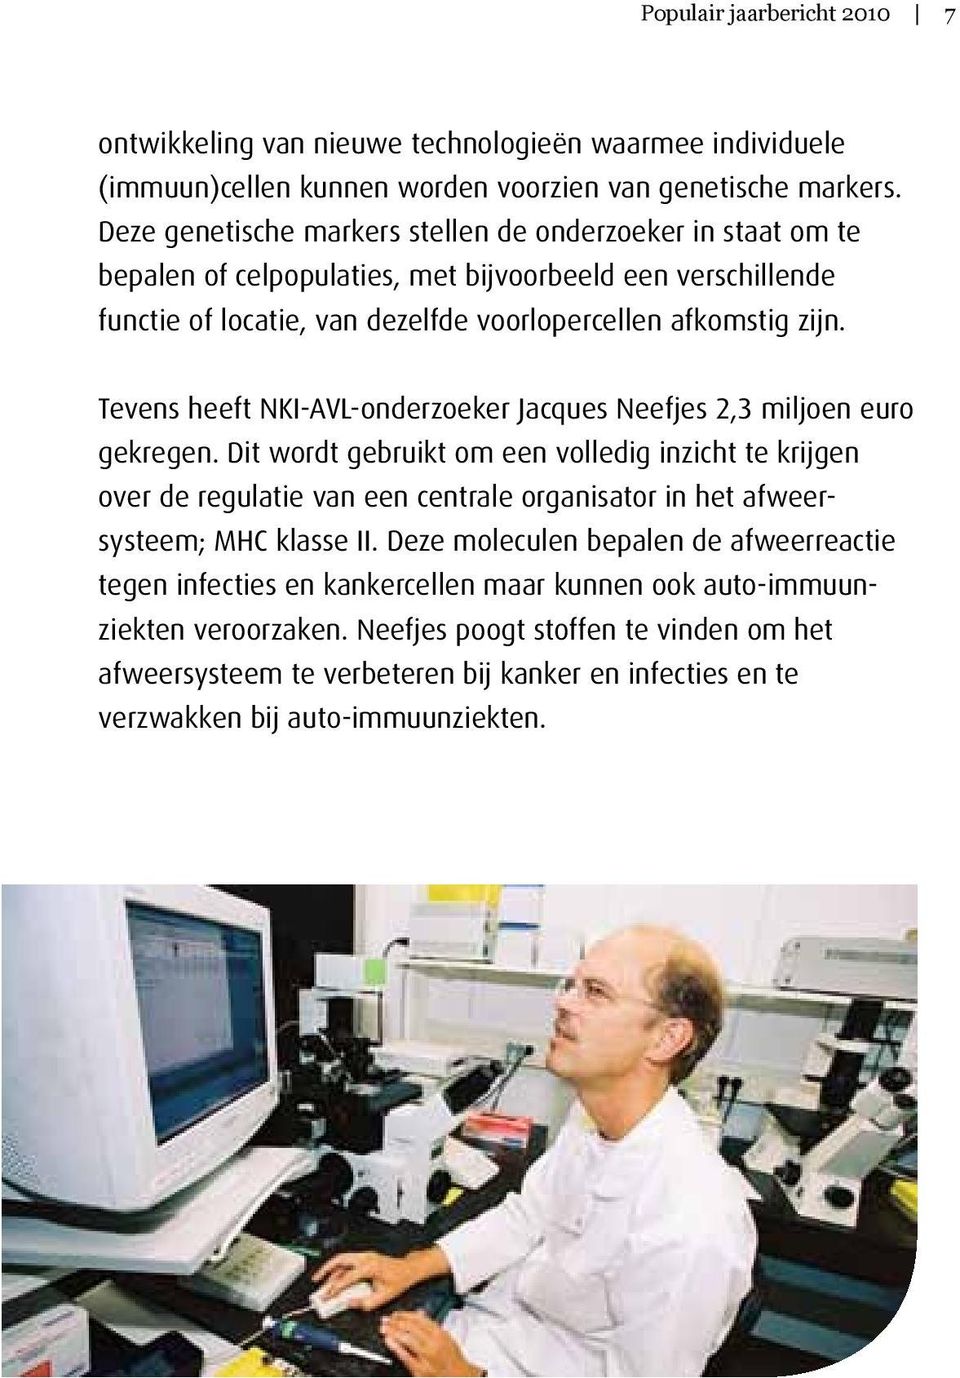 Tevens heeft NKI-AVL-onderzoeker Jacques Neefjes 2,3 miljoen euro gekregen.